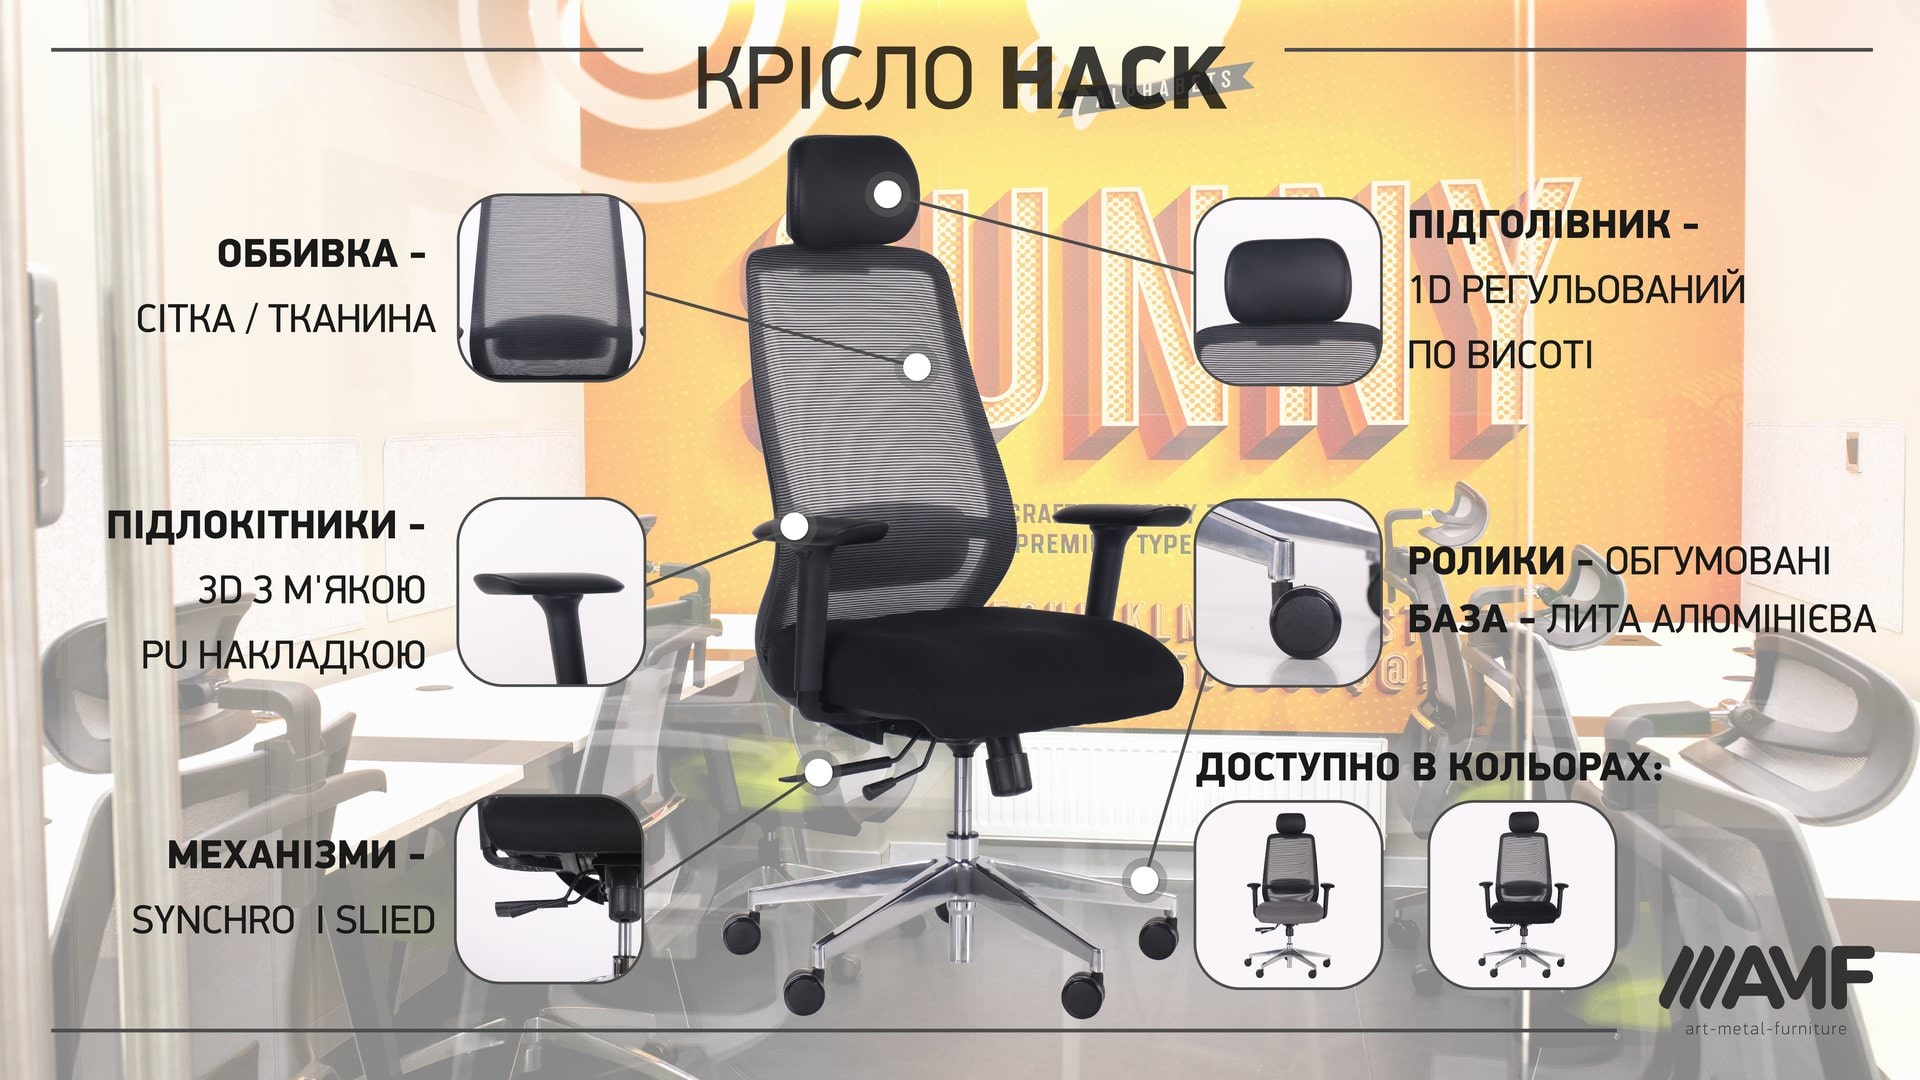 Кресло Hack описание